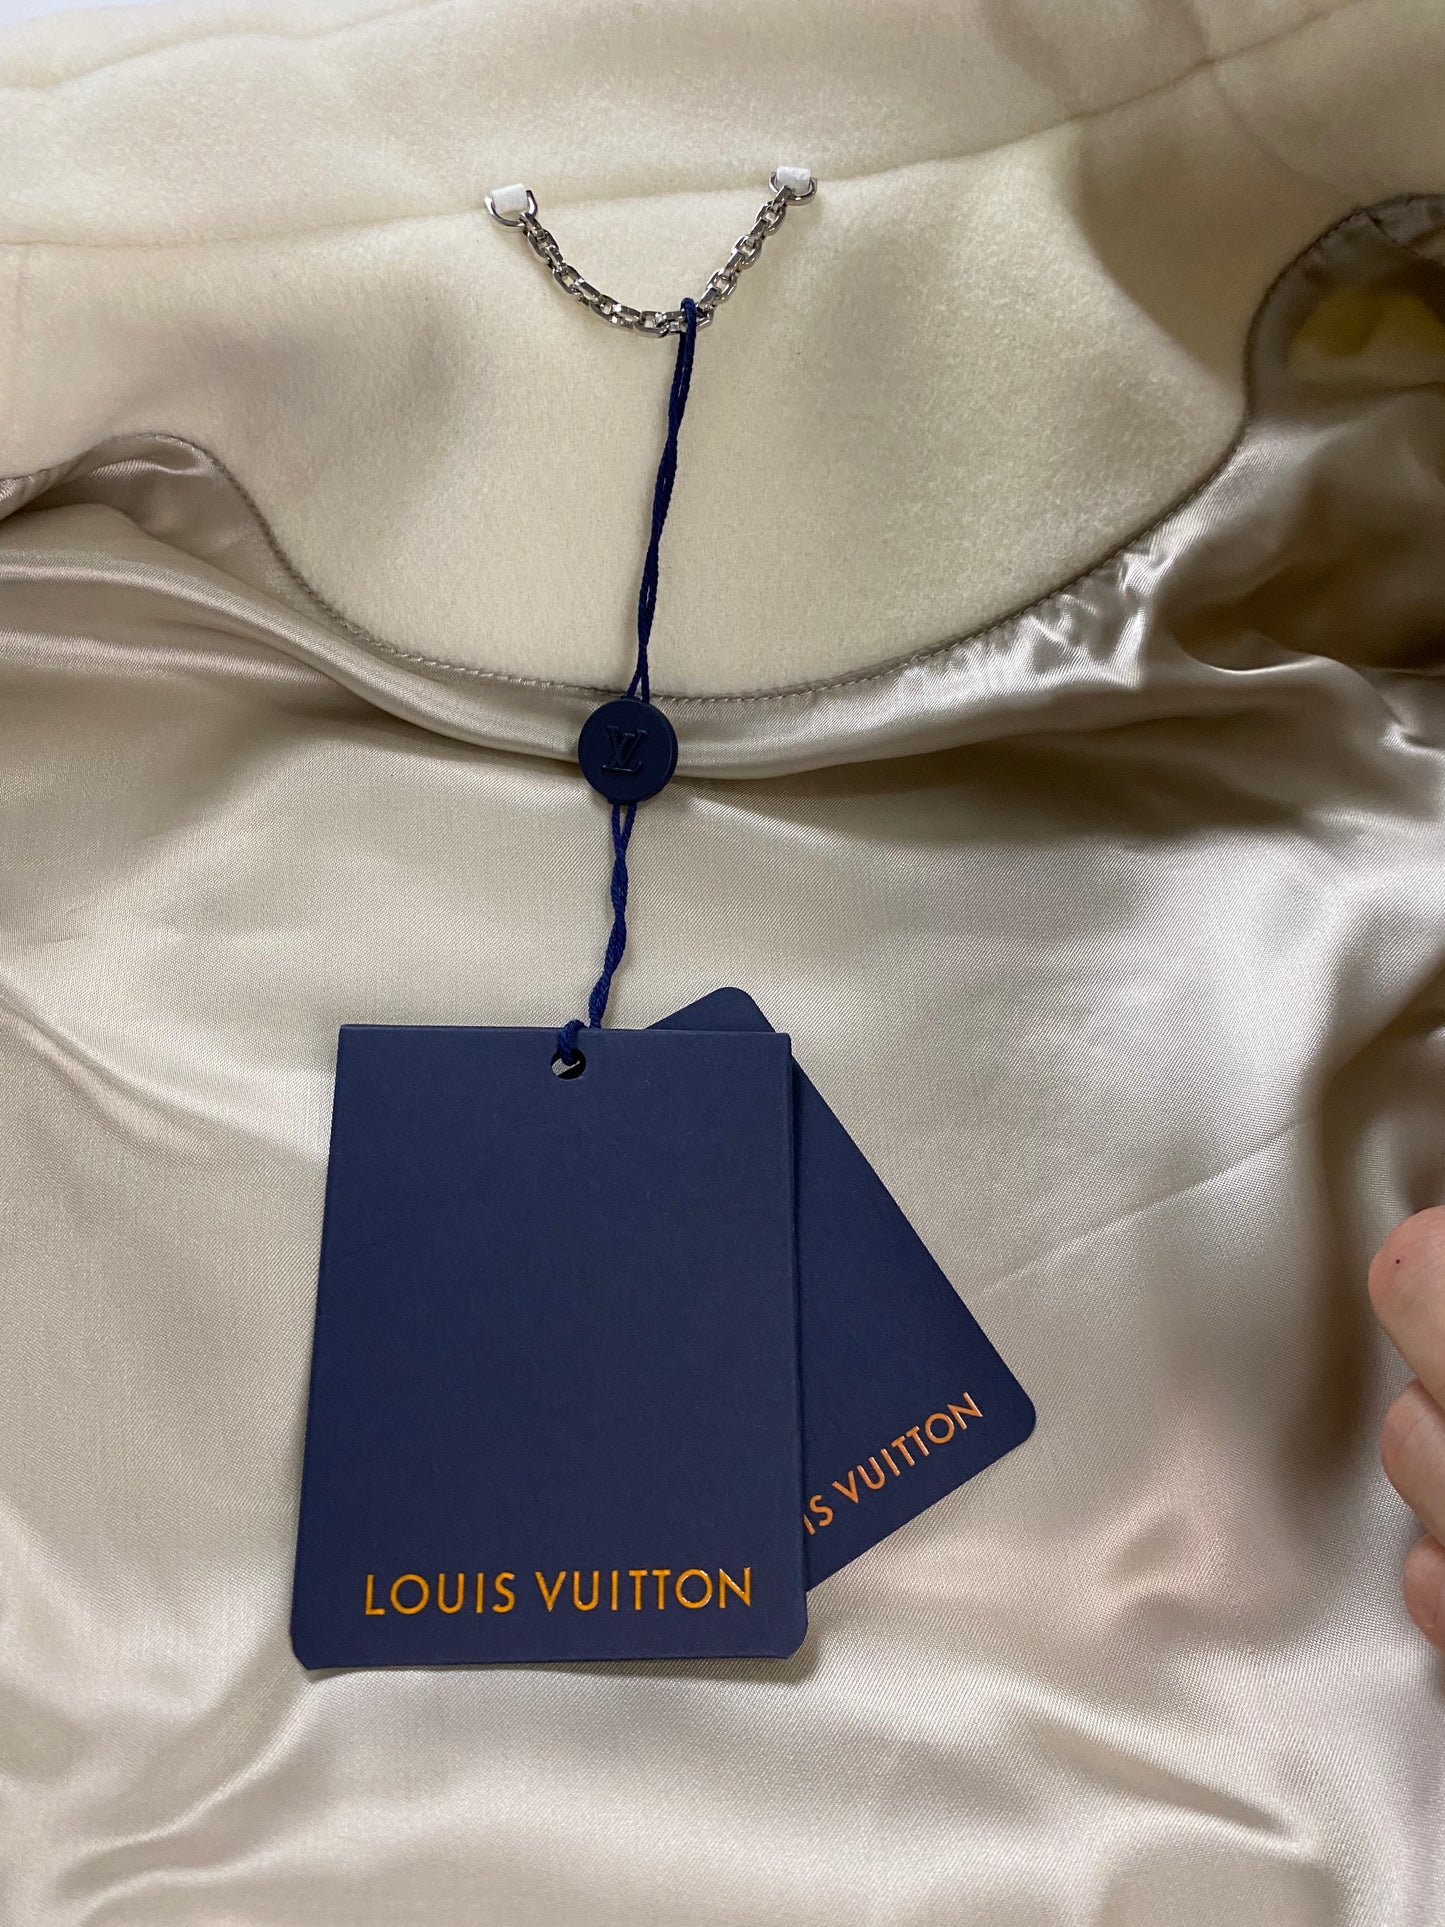 Louis Vuitton LV AW22 Creme white bunny varsity letterman college